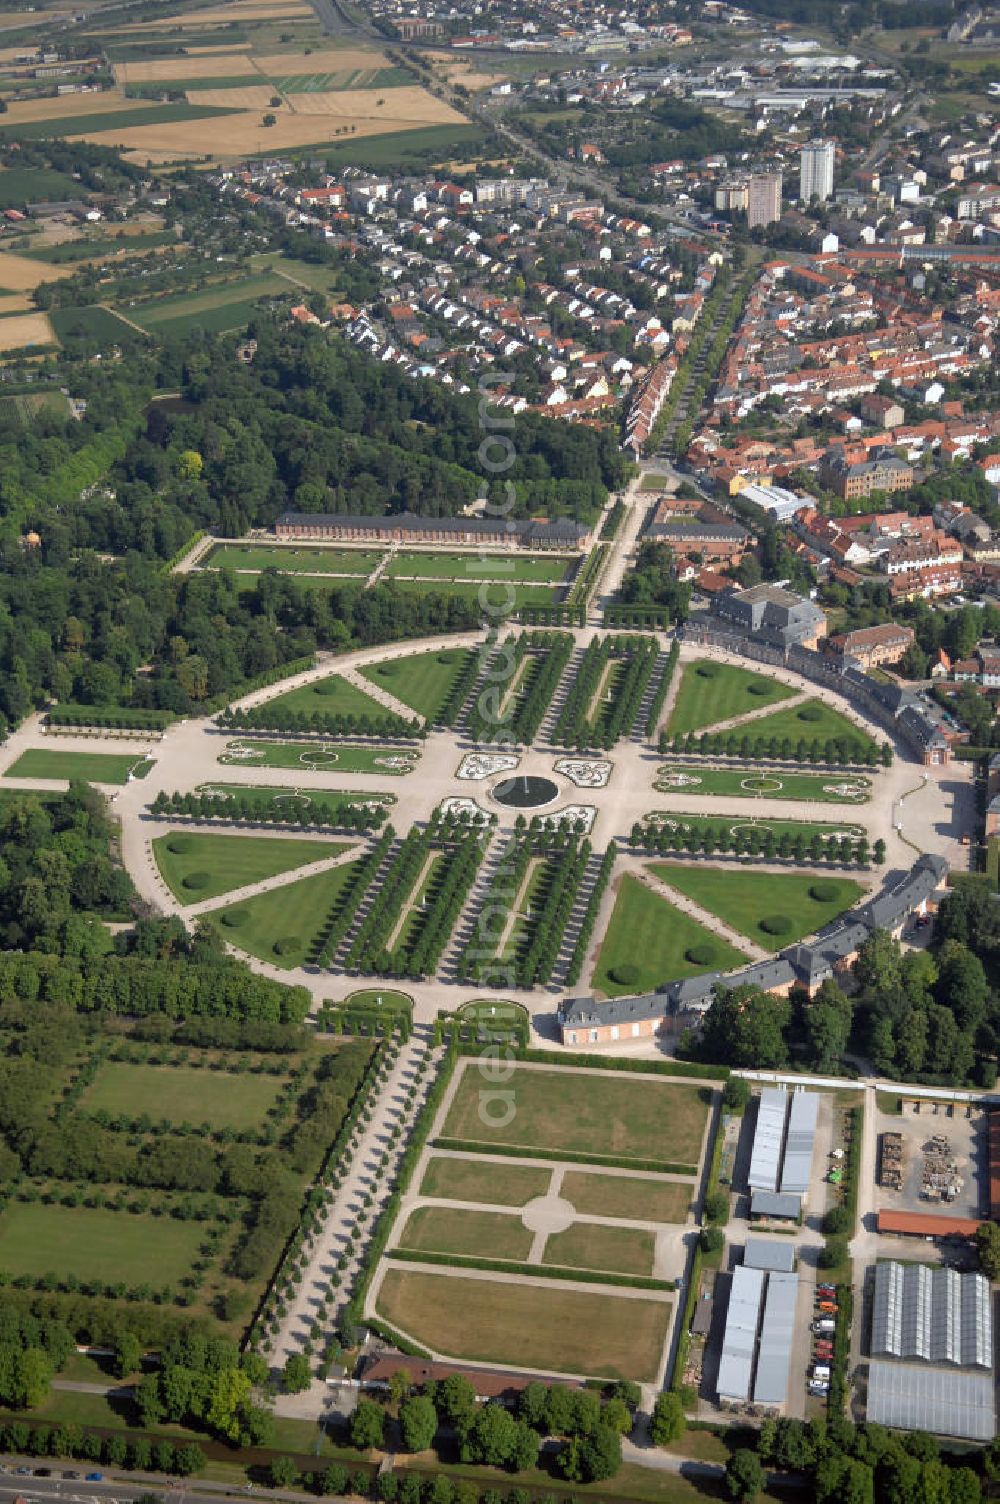 Aerial photograph Schwetzingen - Blick auf den Schlossgarten vom Schloss Schwetzingen. Das Schloss war die Sommerresidenz der pfälzischen Kurfürsten Karl Philipp und Karl Theodor und liegt in der gleichnamigen Stadt. Seine heutige Form erhielt das Schloss auf Befehl des Kurfürsten Johann Wilhelm, der in Düsseldorf regierte. Das Bauwerk wurde in mehreren Bauabschnitten ab dem Jahre 1697 errichtet und ausgebaut und im Jahr 1752 erfolgte eine Gartenerweiterung. 2007 wurde der Antrag auf Aufnahme der ehemaligen kurpfälzischen Sommerresidenz Schwetzingen in die UNESCO-Welterbe-Liste gestellt. Jährlich finden im Schloss die Schwetzinger Festspiele und alle zwei Jahre das Lichterfest statt. Kontakt: Schloss Schwetzingen, 68723 Schwetzingen, Tel. +49(0)6202 81-484, Fax +49(0)6202 81-386, E-Mail: info@schloss-schwetzingen.de